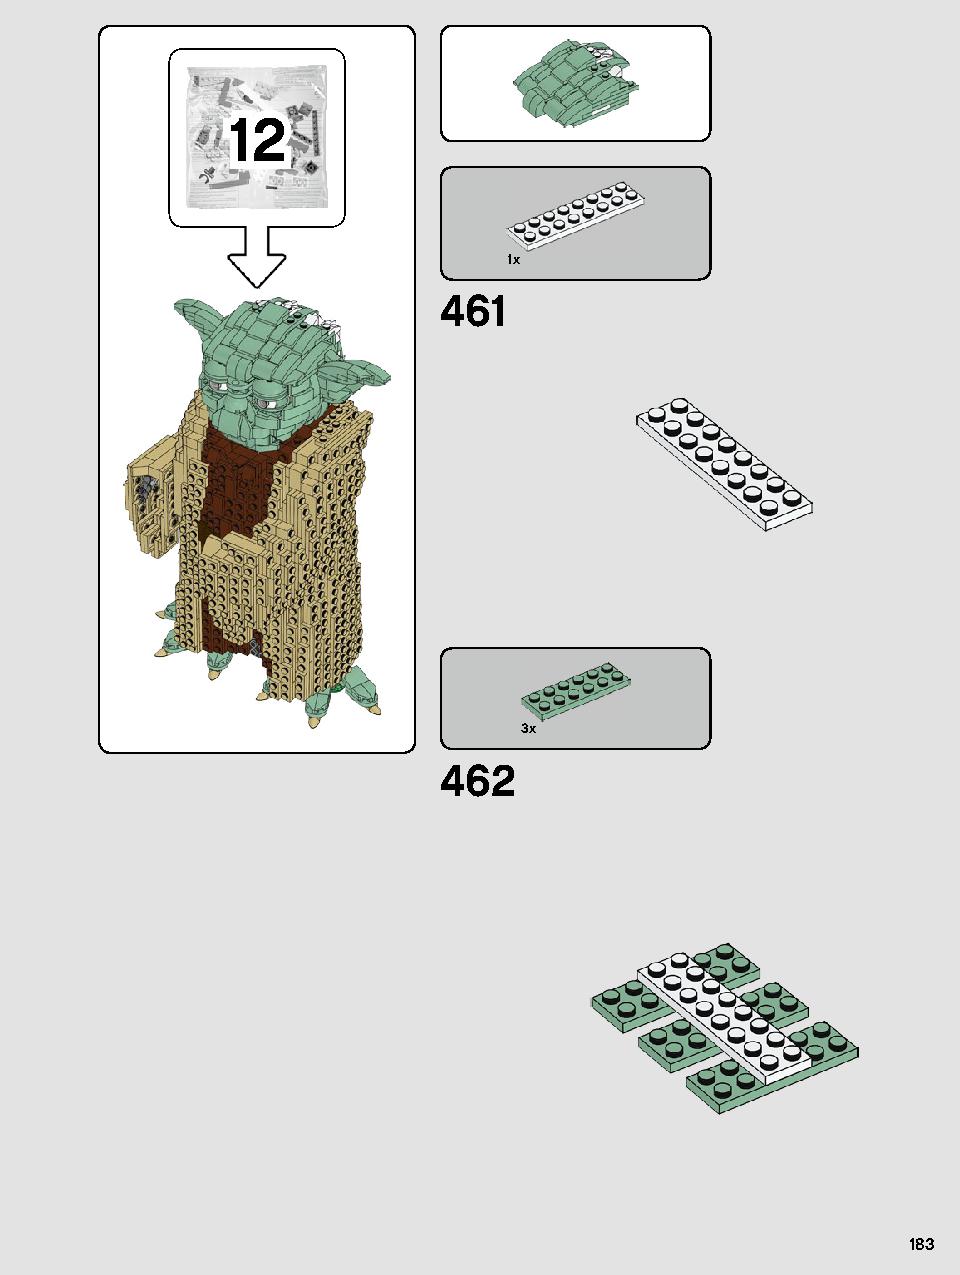 ヨーダ™ 75255 レゴの商品情報 レゴの説明書・組立方法 183 page